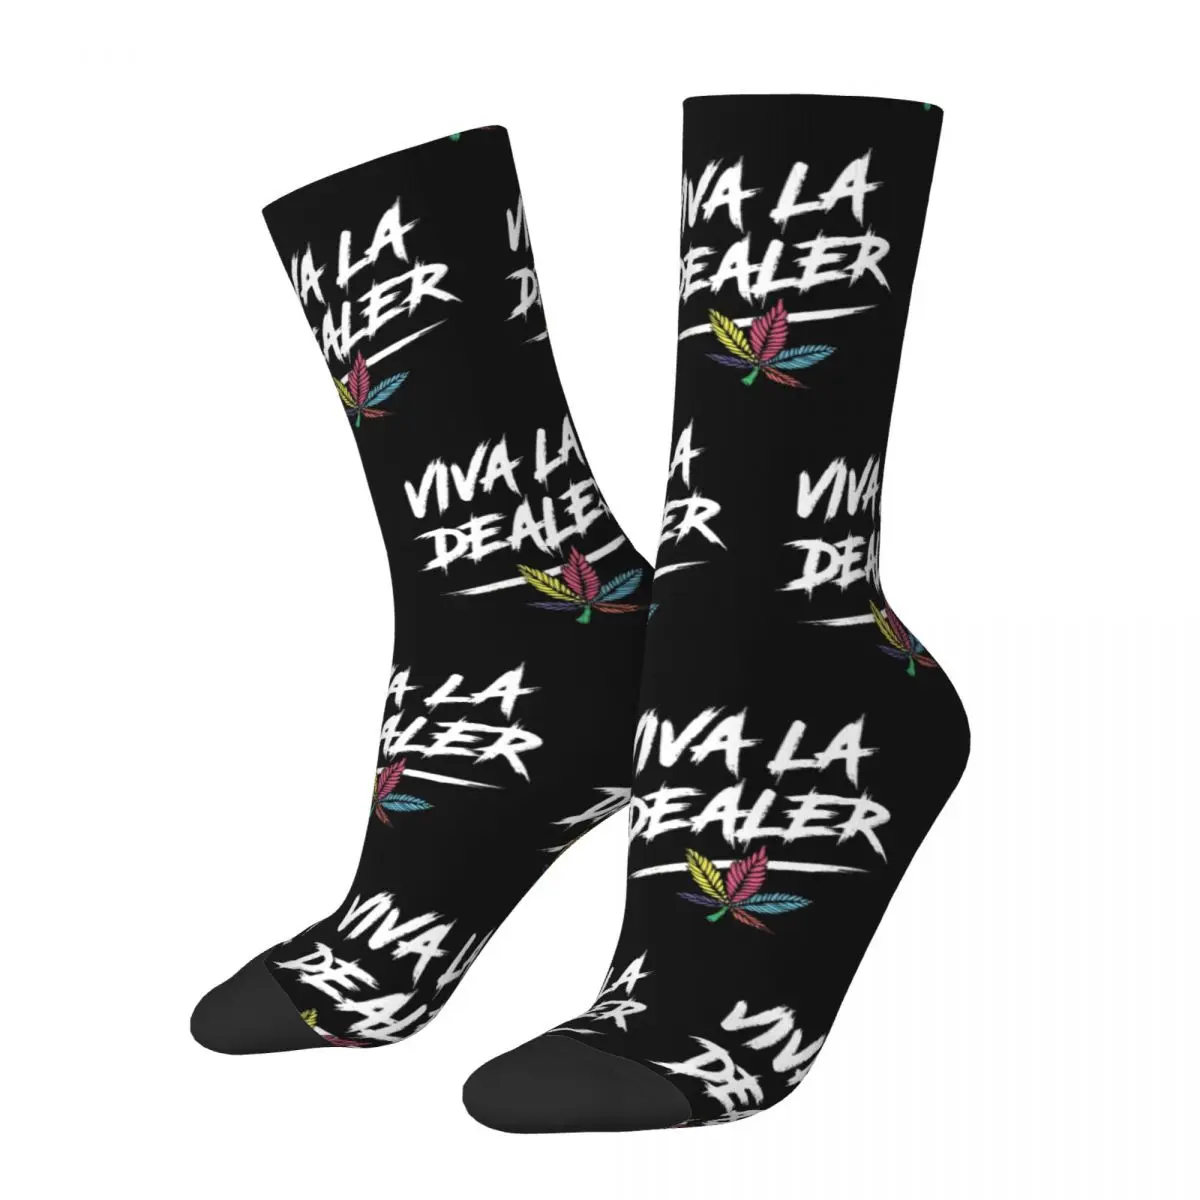 

Viva La Dealer Sdp Band Hip Hop Music Band Gift Dress Socks Accessories for Women Compression Printed Socks